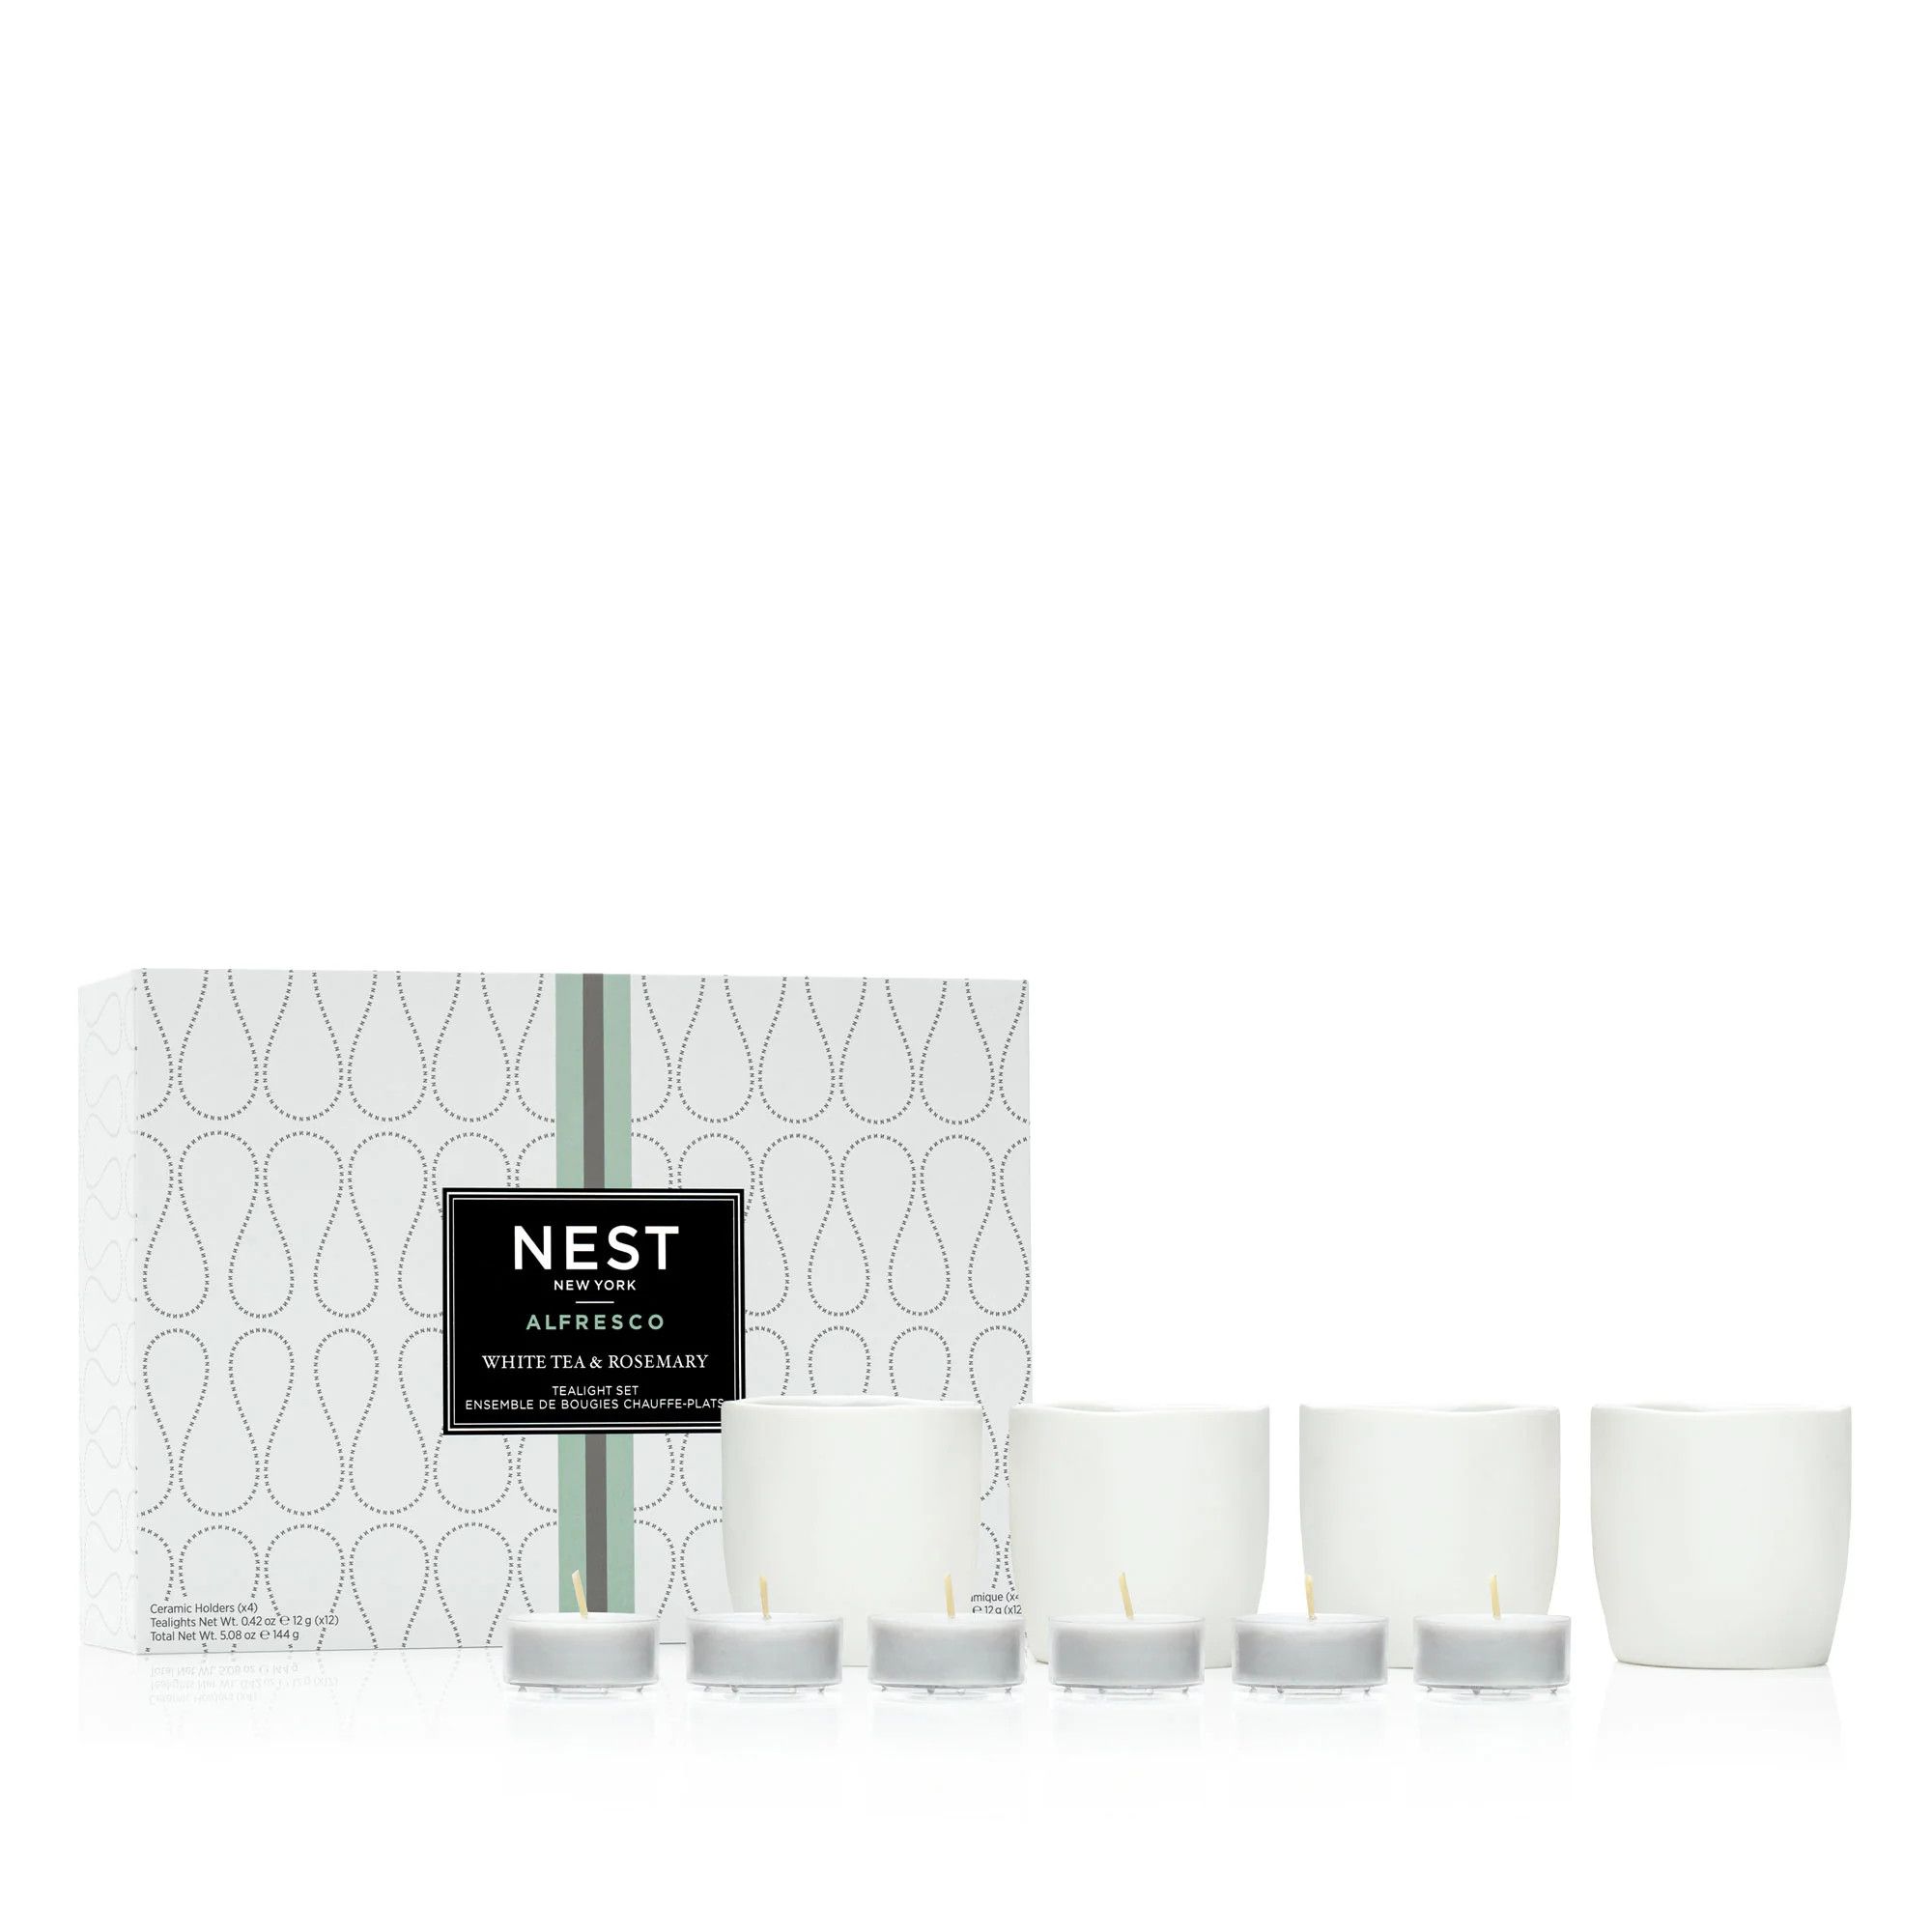 White Tea & Rosemary Alfresco Tealight Set | NEST Fragrances